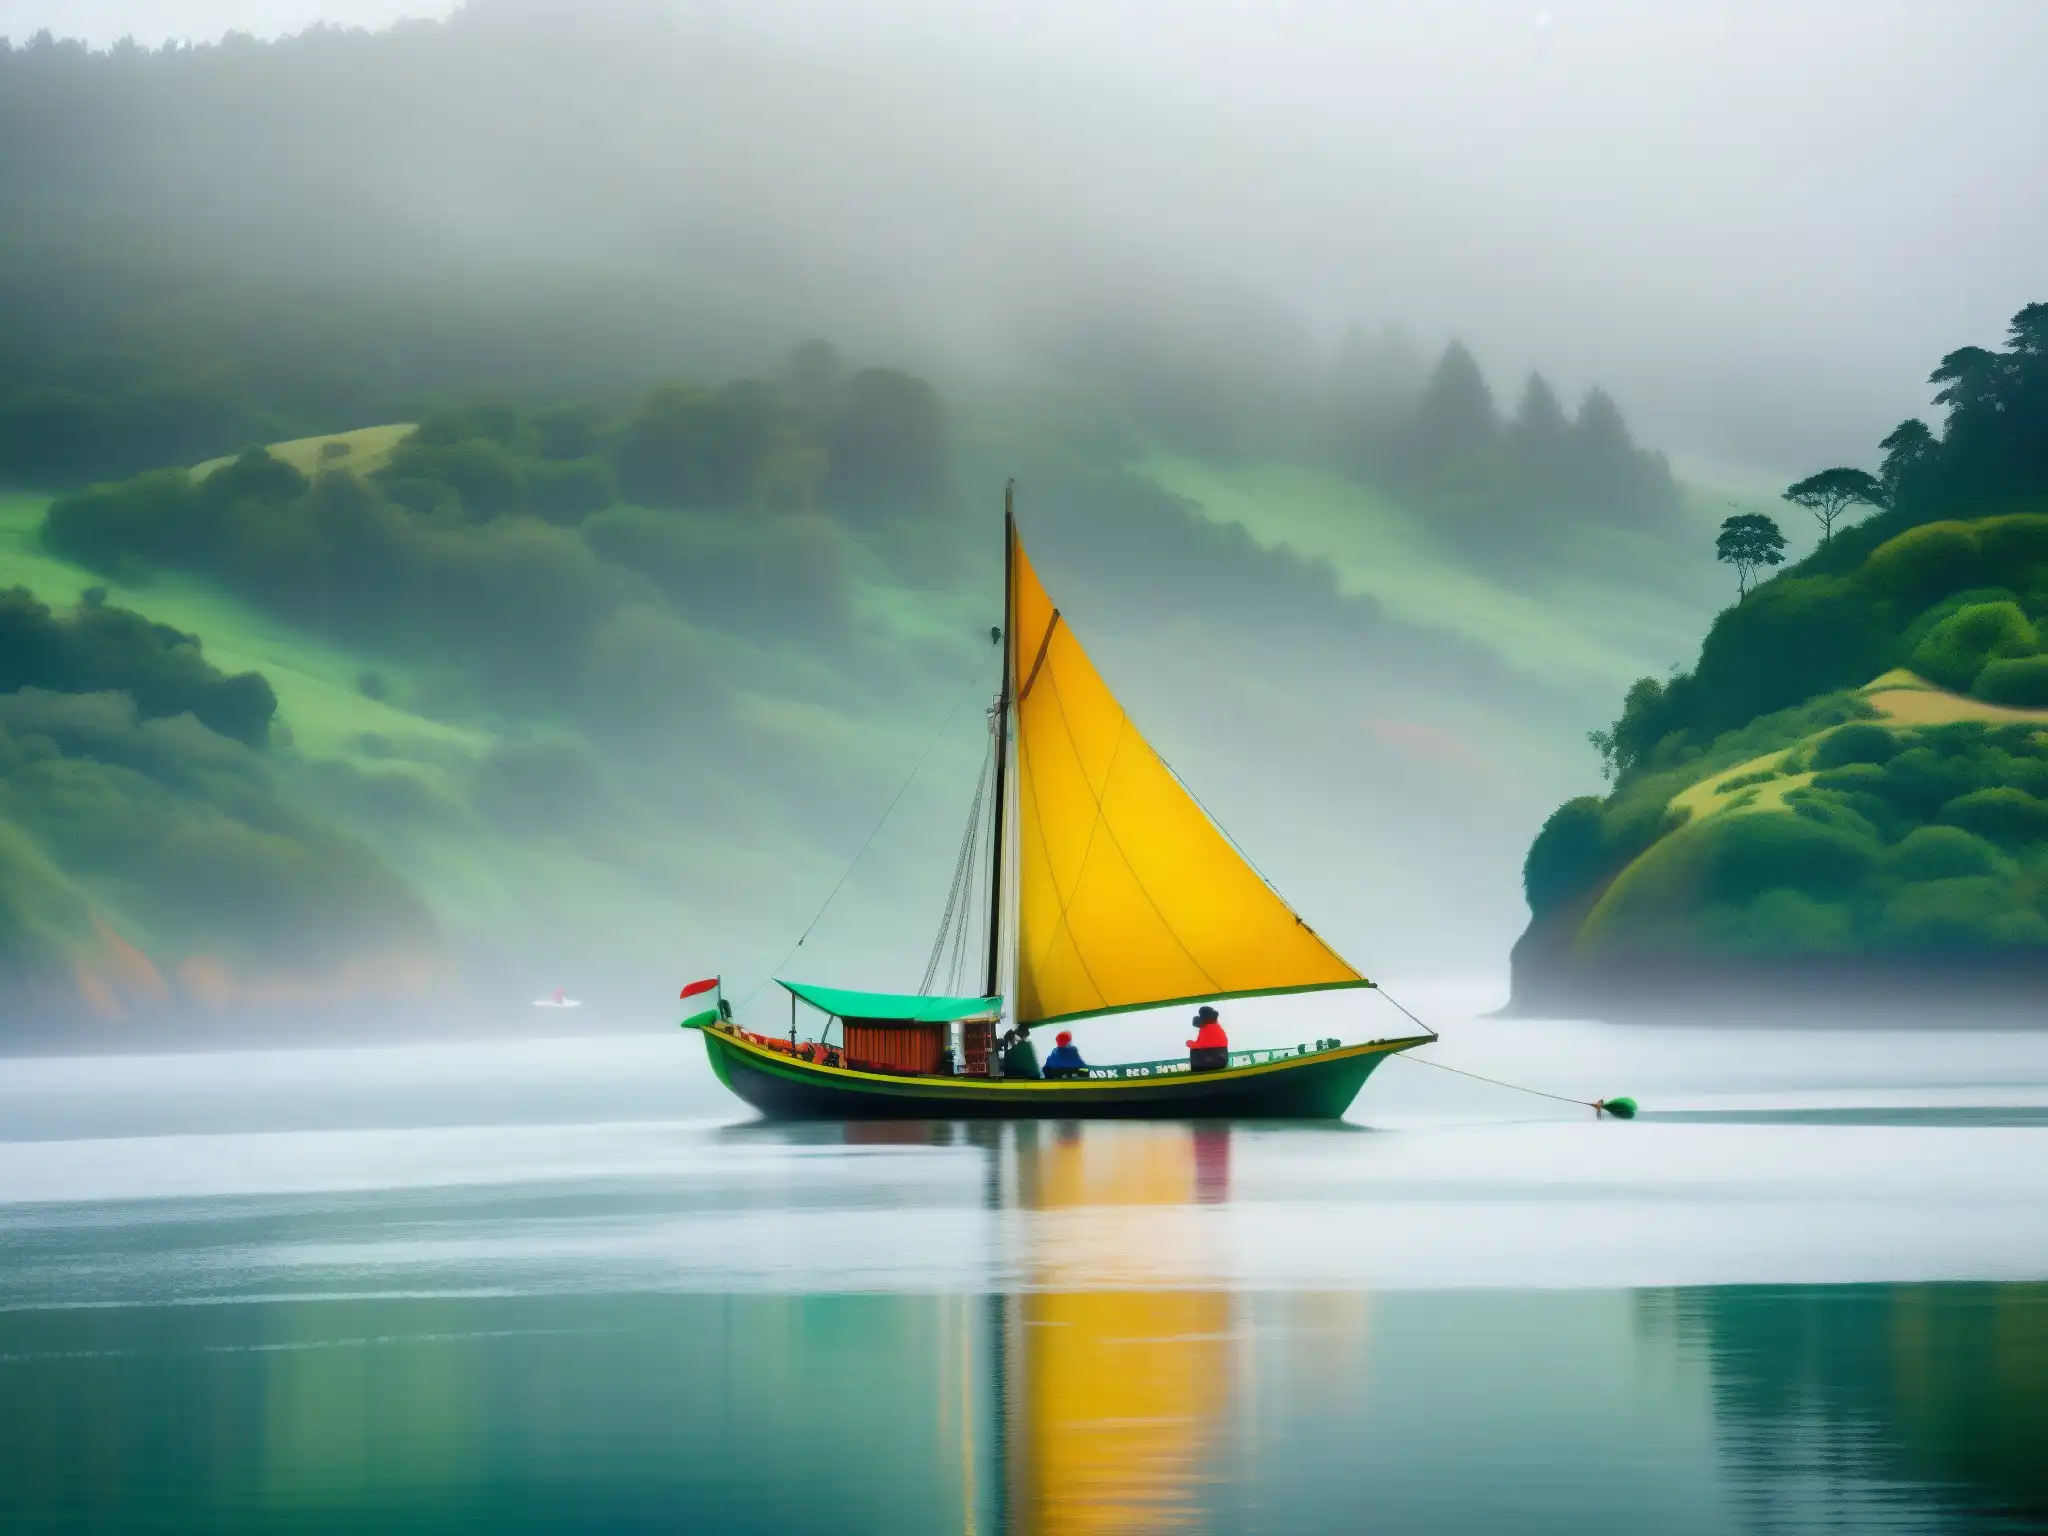 Bote Chilote tradicional navega en aguas neblinosas de la Isla de Chiloé, rodeado de vegetación exuberante y mitología chilena Basilisco Chilote